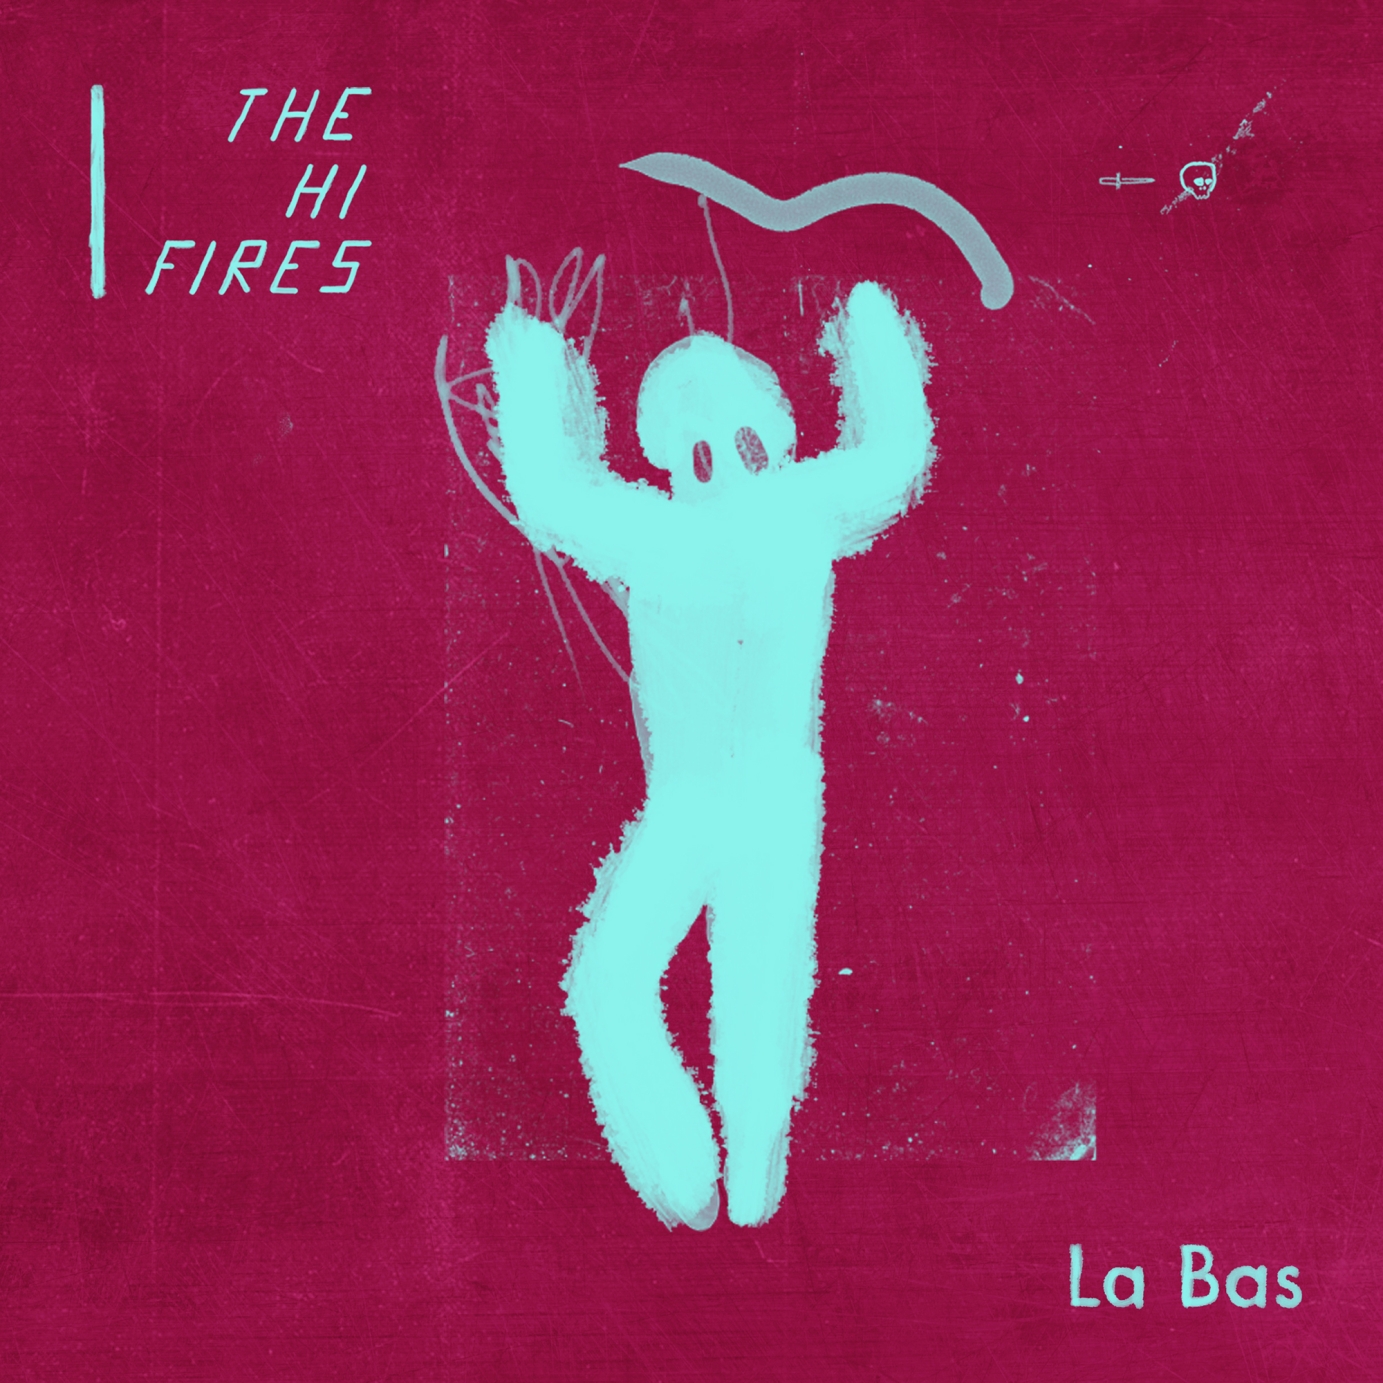 The-Hi-Fires-cover-La-Bas.jpg